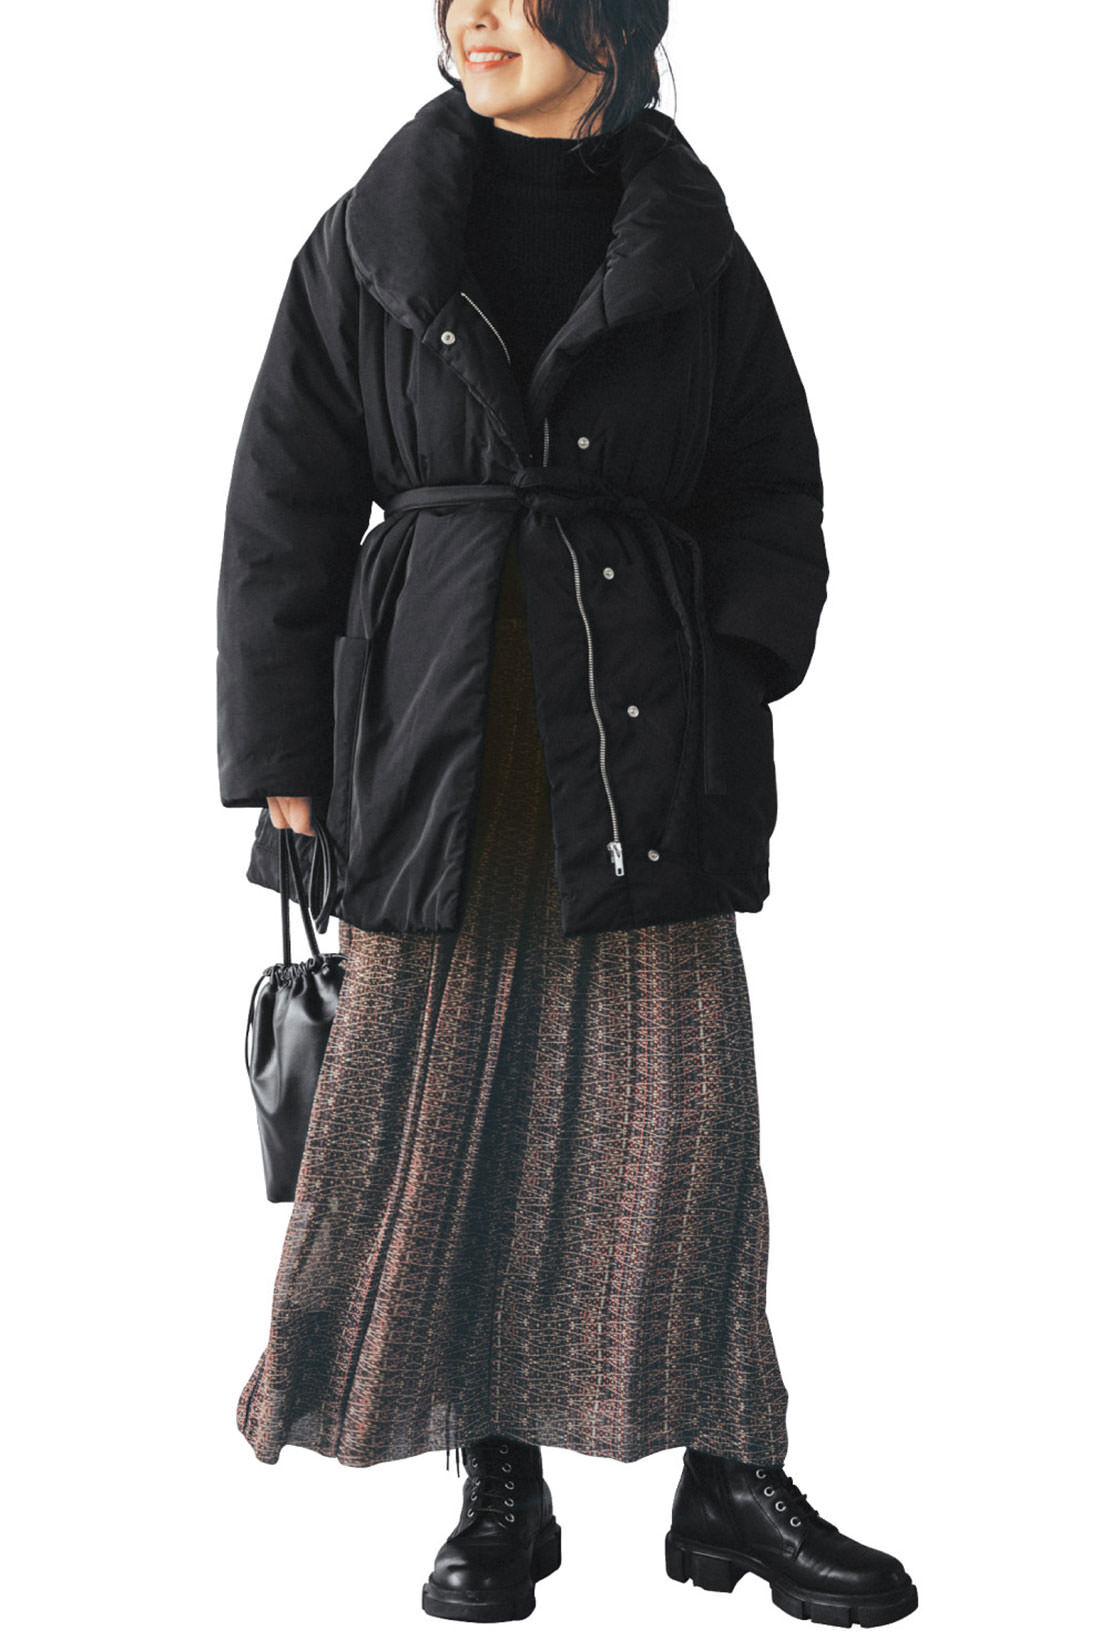 Real Stock|IEDIT[イディット]　福田麻琴さんコラボ　サステナブル素材で未来にやさしい　女っぷりが上がる中わたミディコート〈ブラック〉|ウエストマークのベルトが女っぽい印象に。